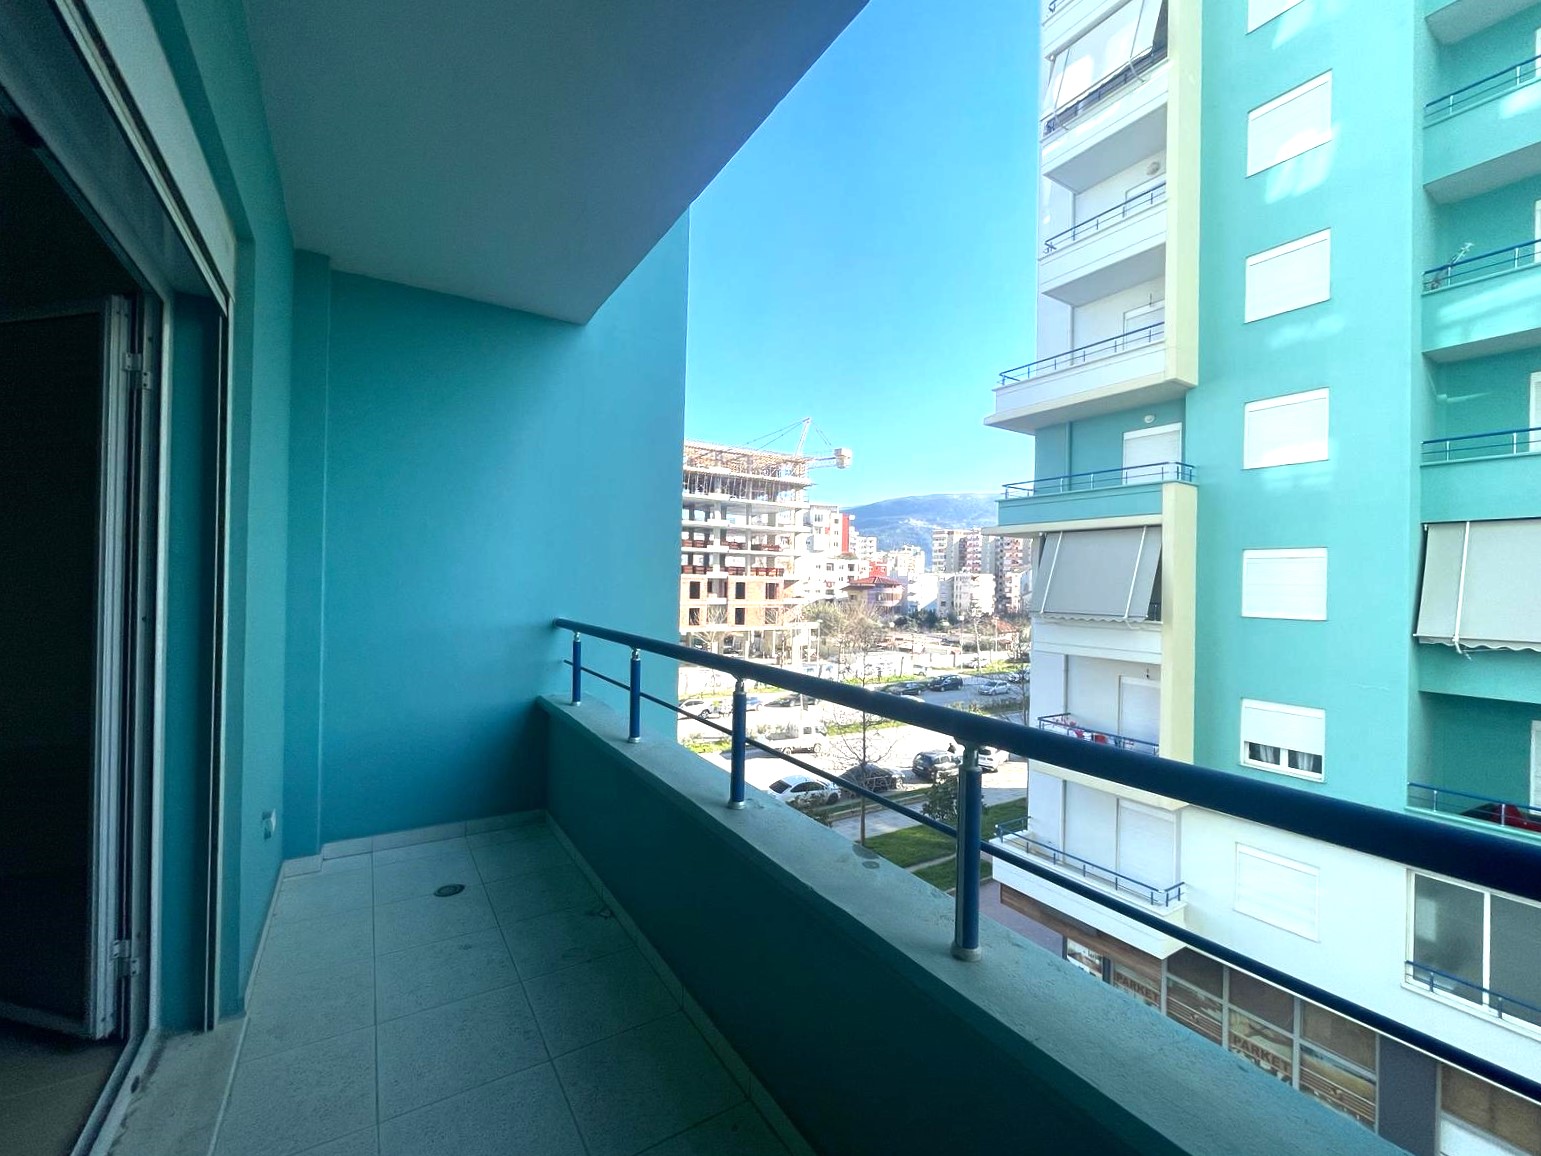 Foto e Apartment në shitje Rruga Transballkanike, Vlorë